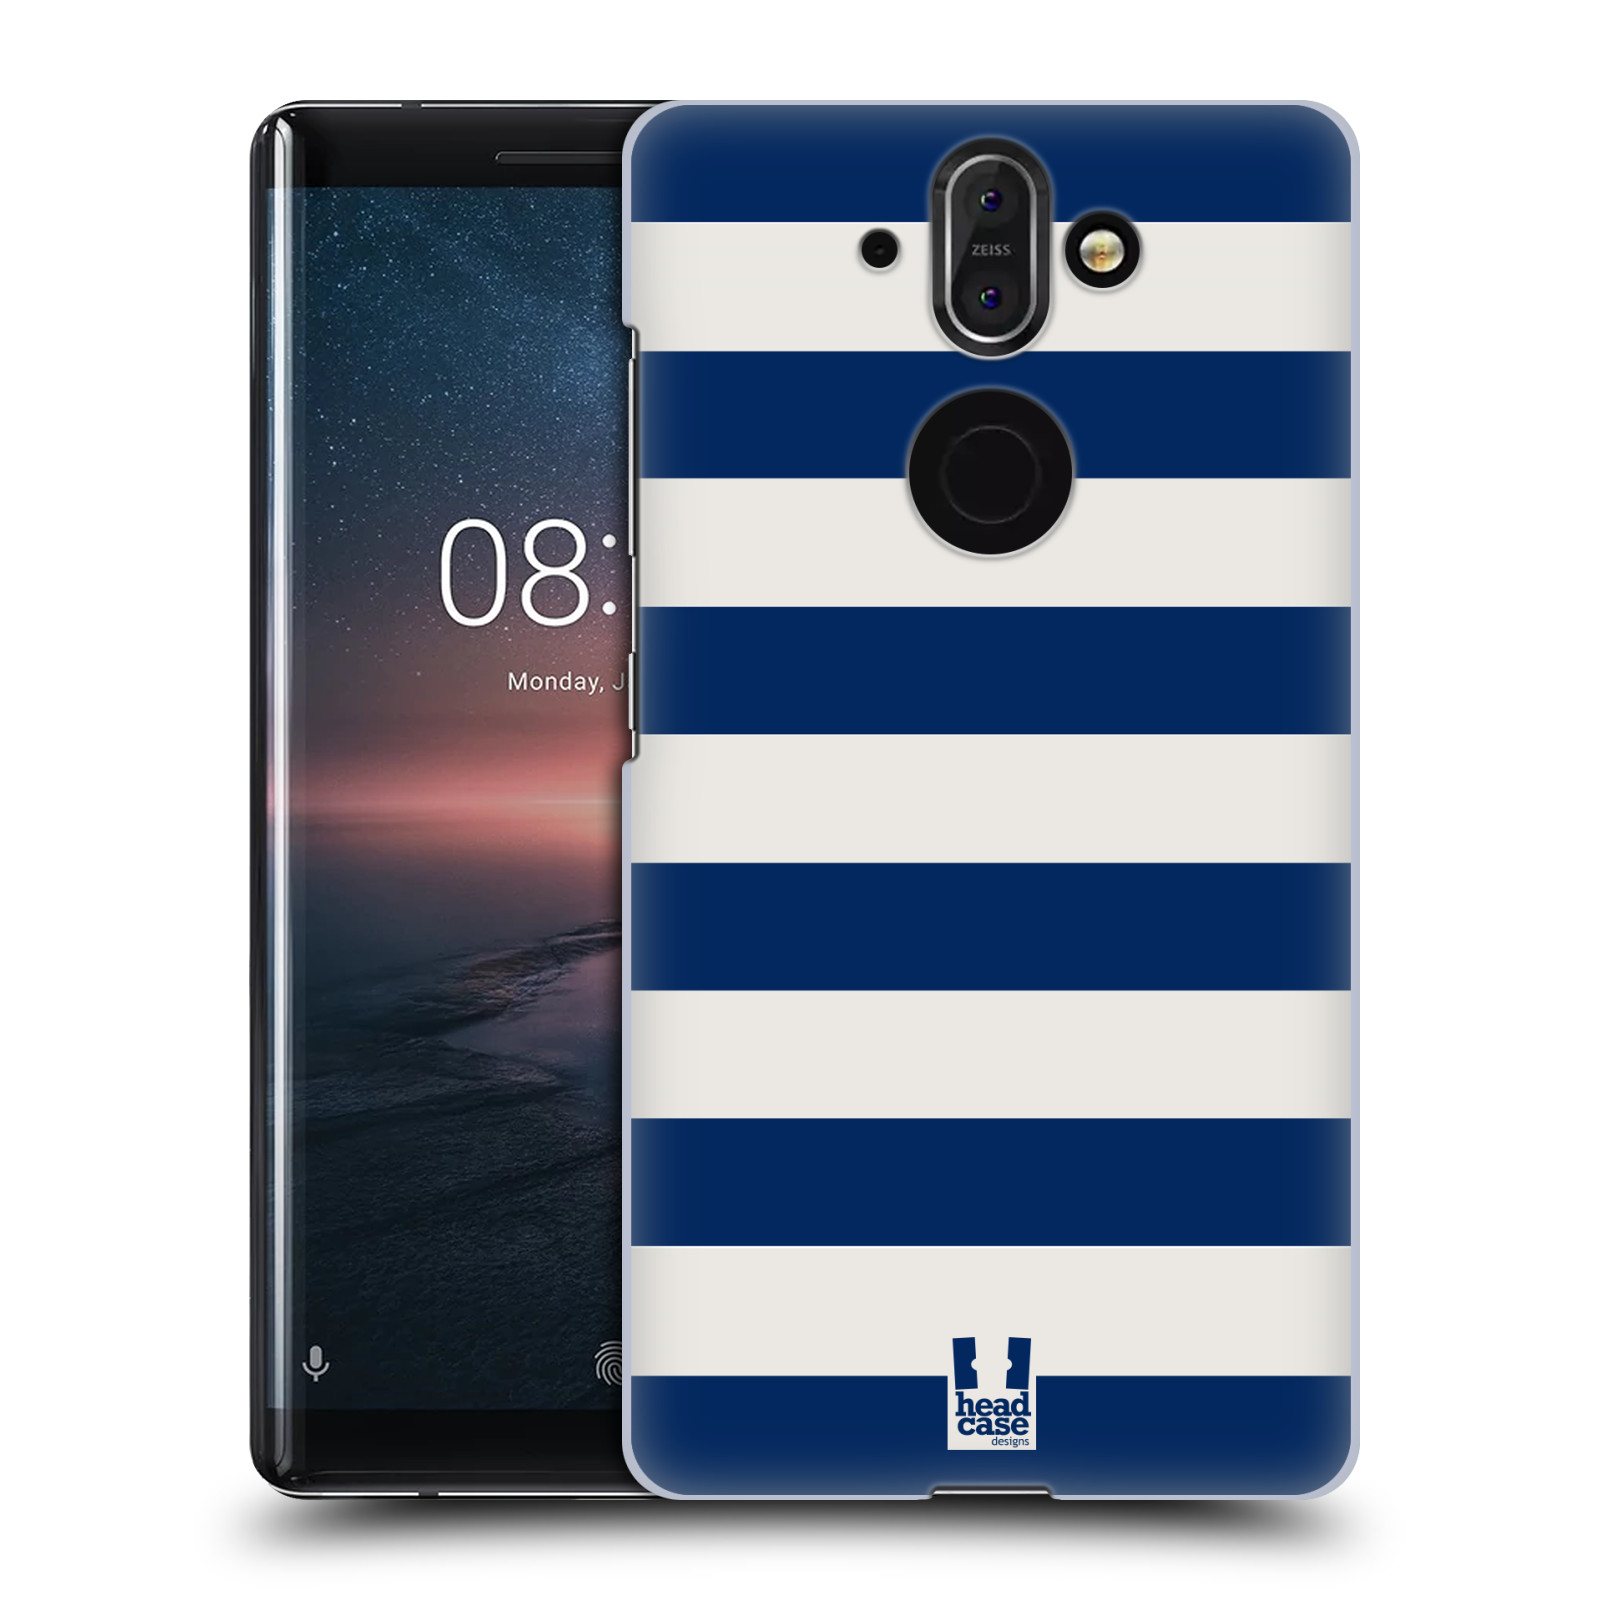 Zadní obal pro mobil Nokia 8 Sirocco - HEAD CASE - Námořnické pruhy modrá a bílá